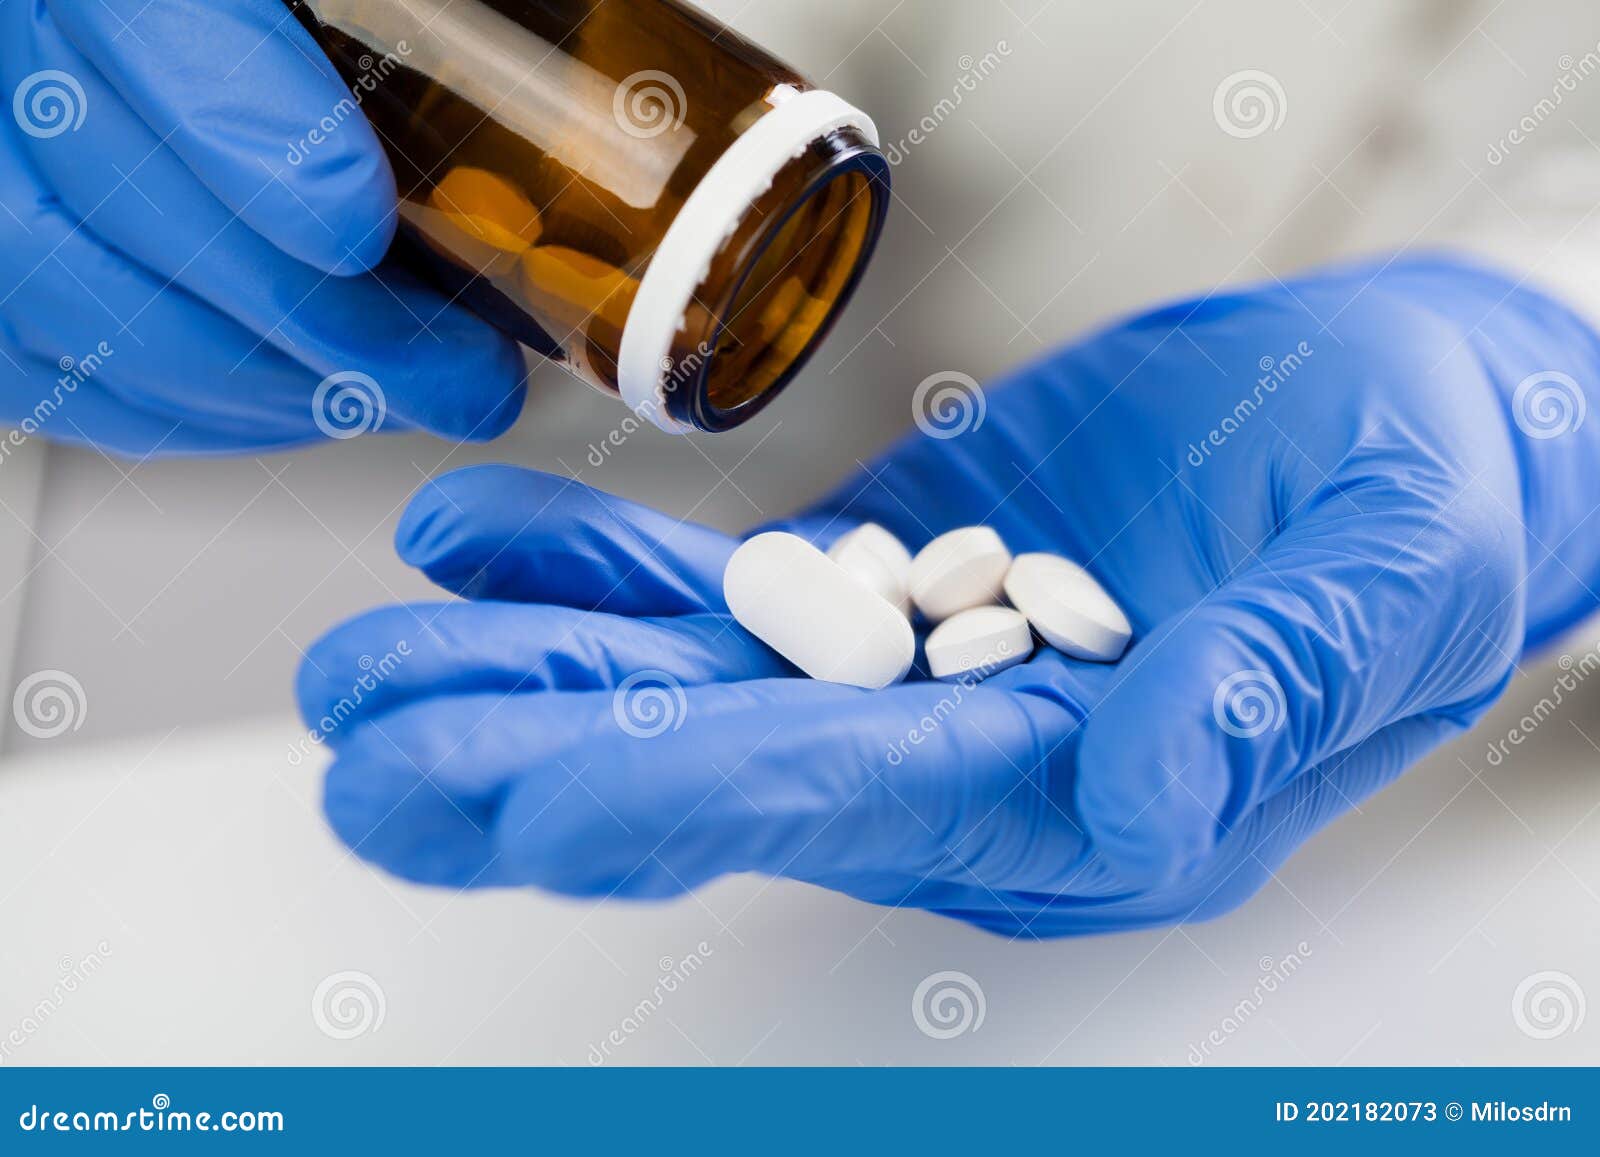 medical practitioner wearing blue surgical latex gloves holding medicine bottle